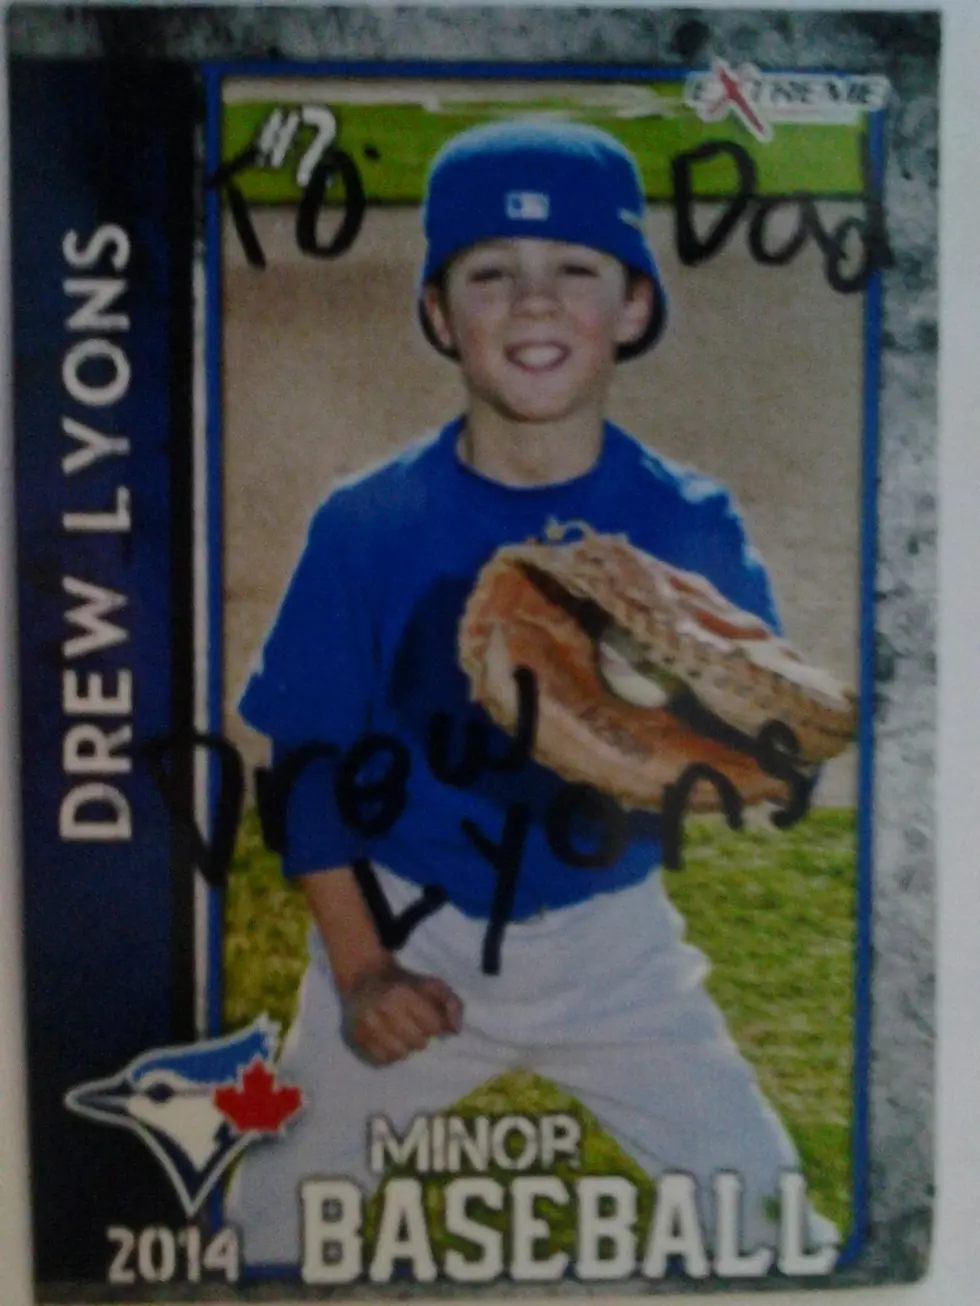 My Son’s First Baseball Card